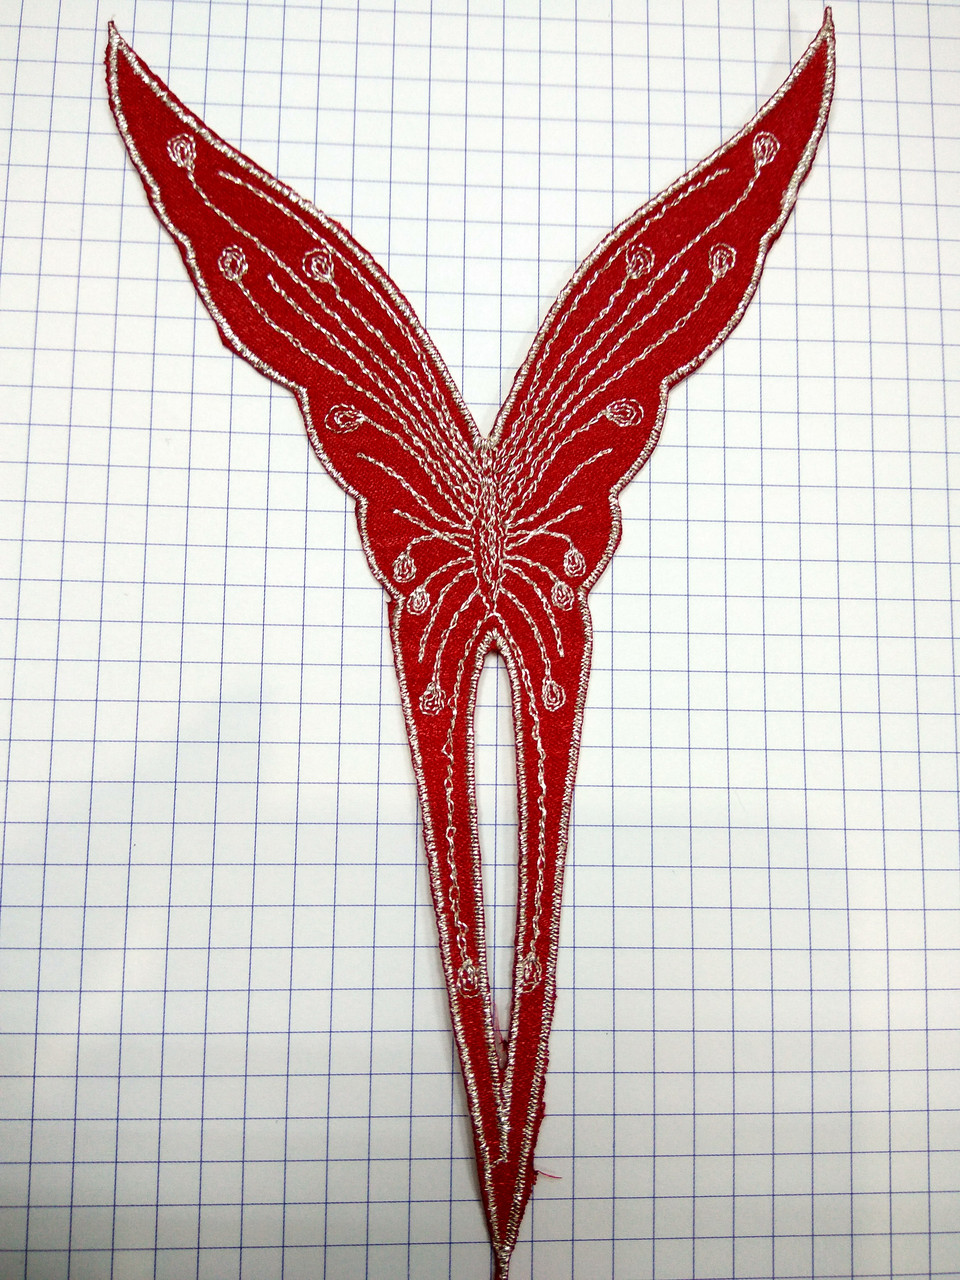 Червоний метелик аплікація клейова вишивка на тканинній основі вишивка сріблом клеїться праскою 